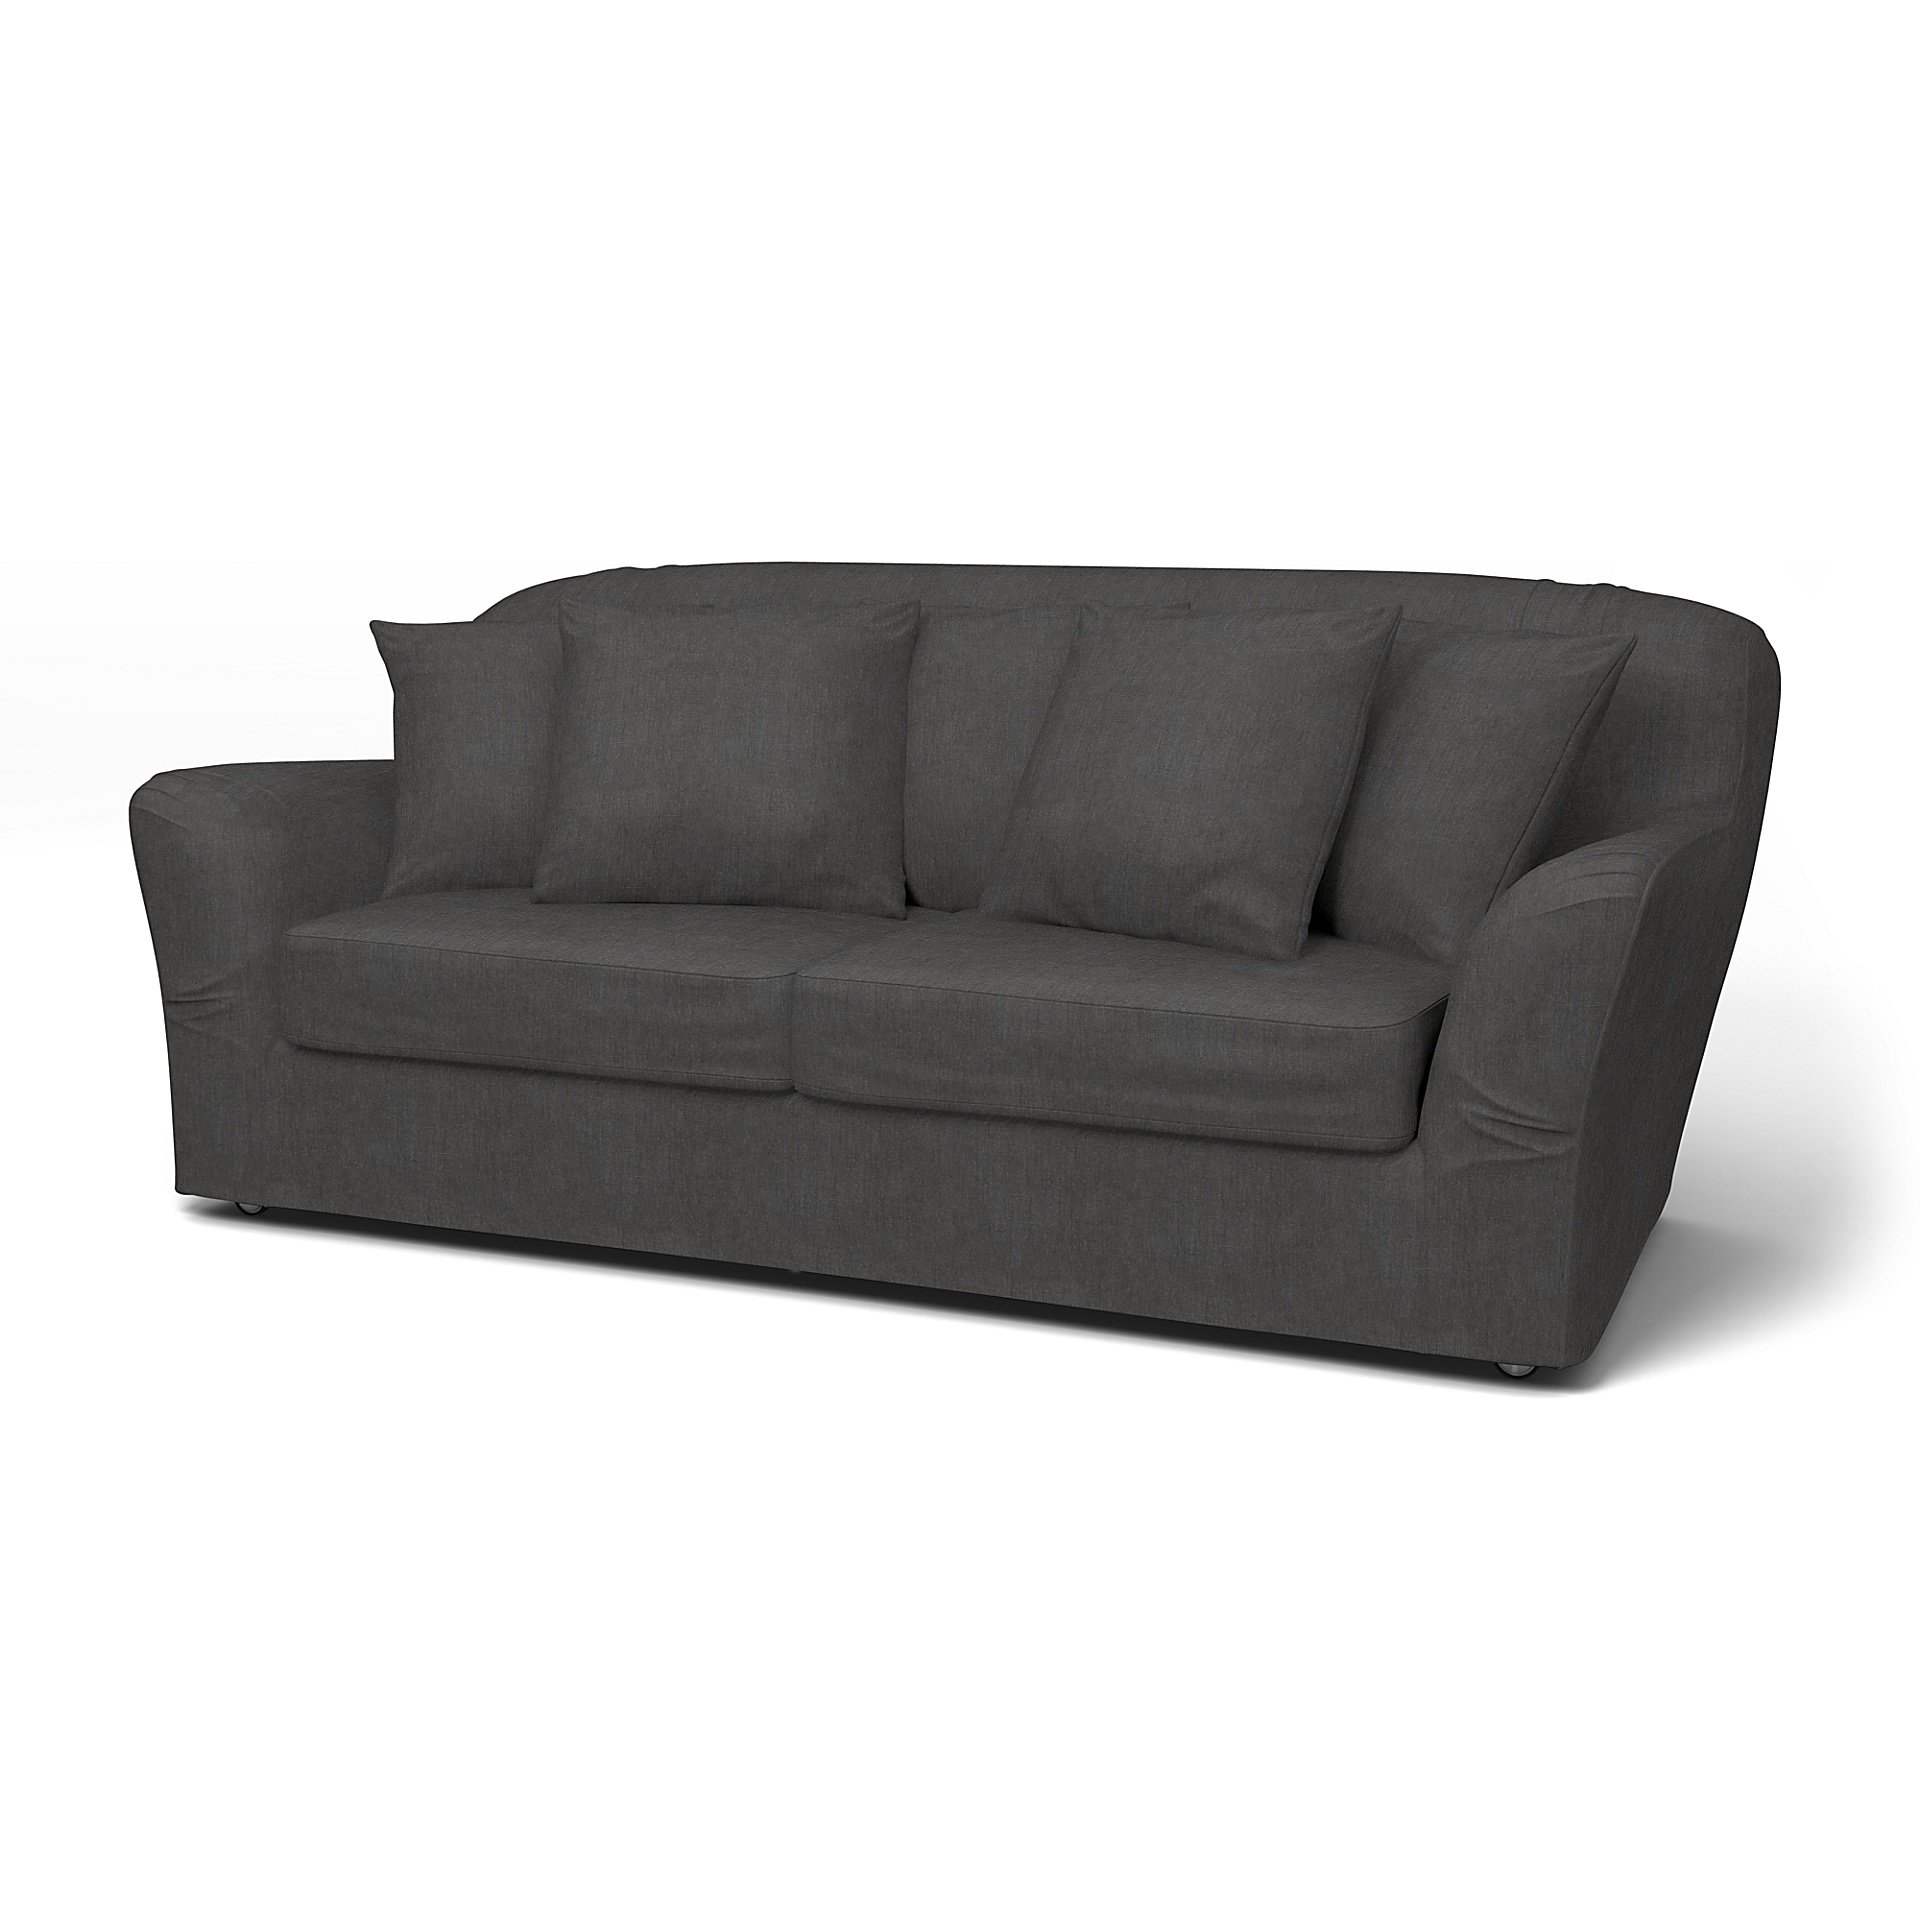 IKEA - Tomelilla Sofa Bed Cover (Small model), Espresso, Linen - Bemz